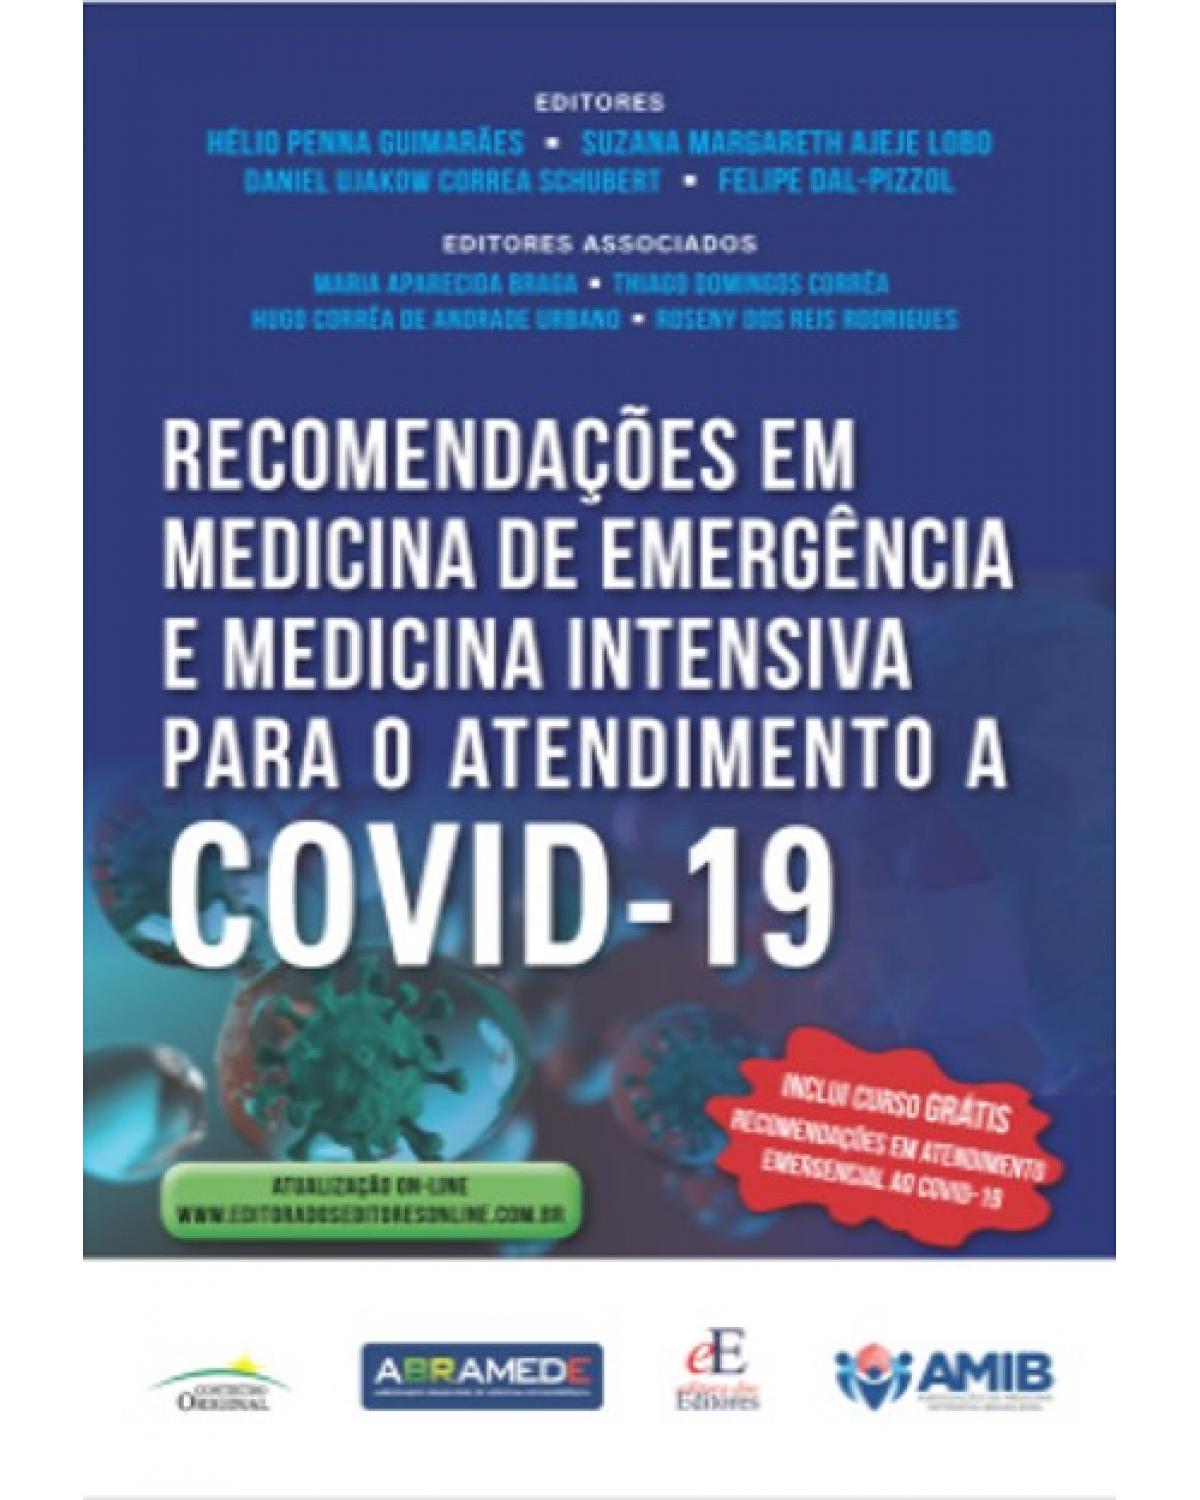 Recomendações em medicina de emergência e medicina intensiva para o atendimento a Covid-19 | 2020